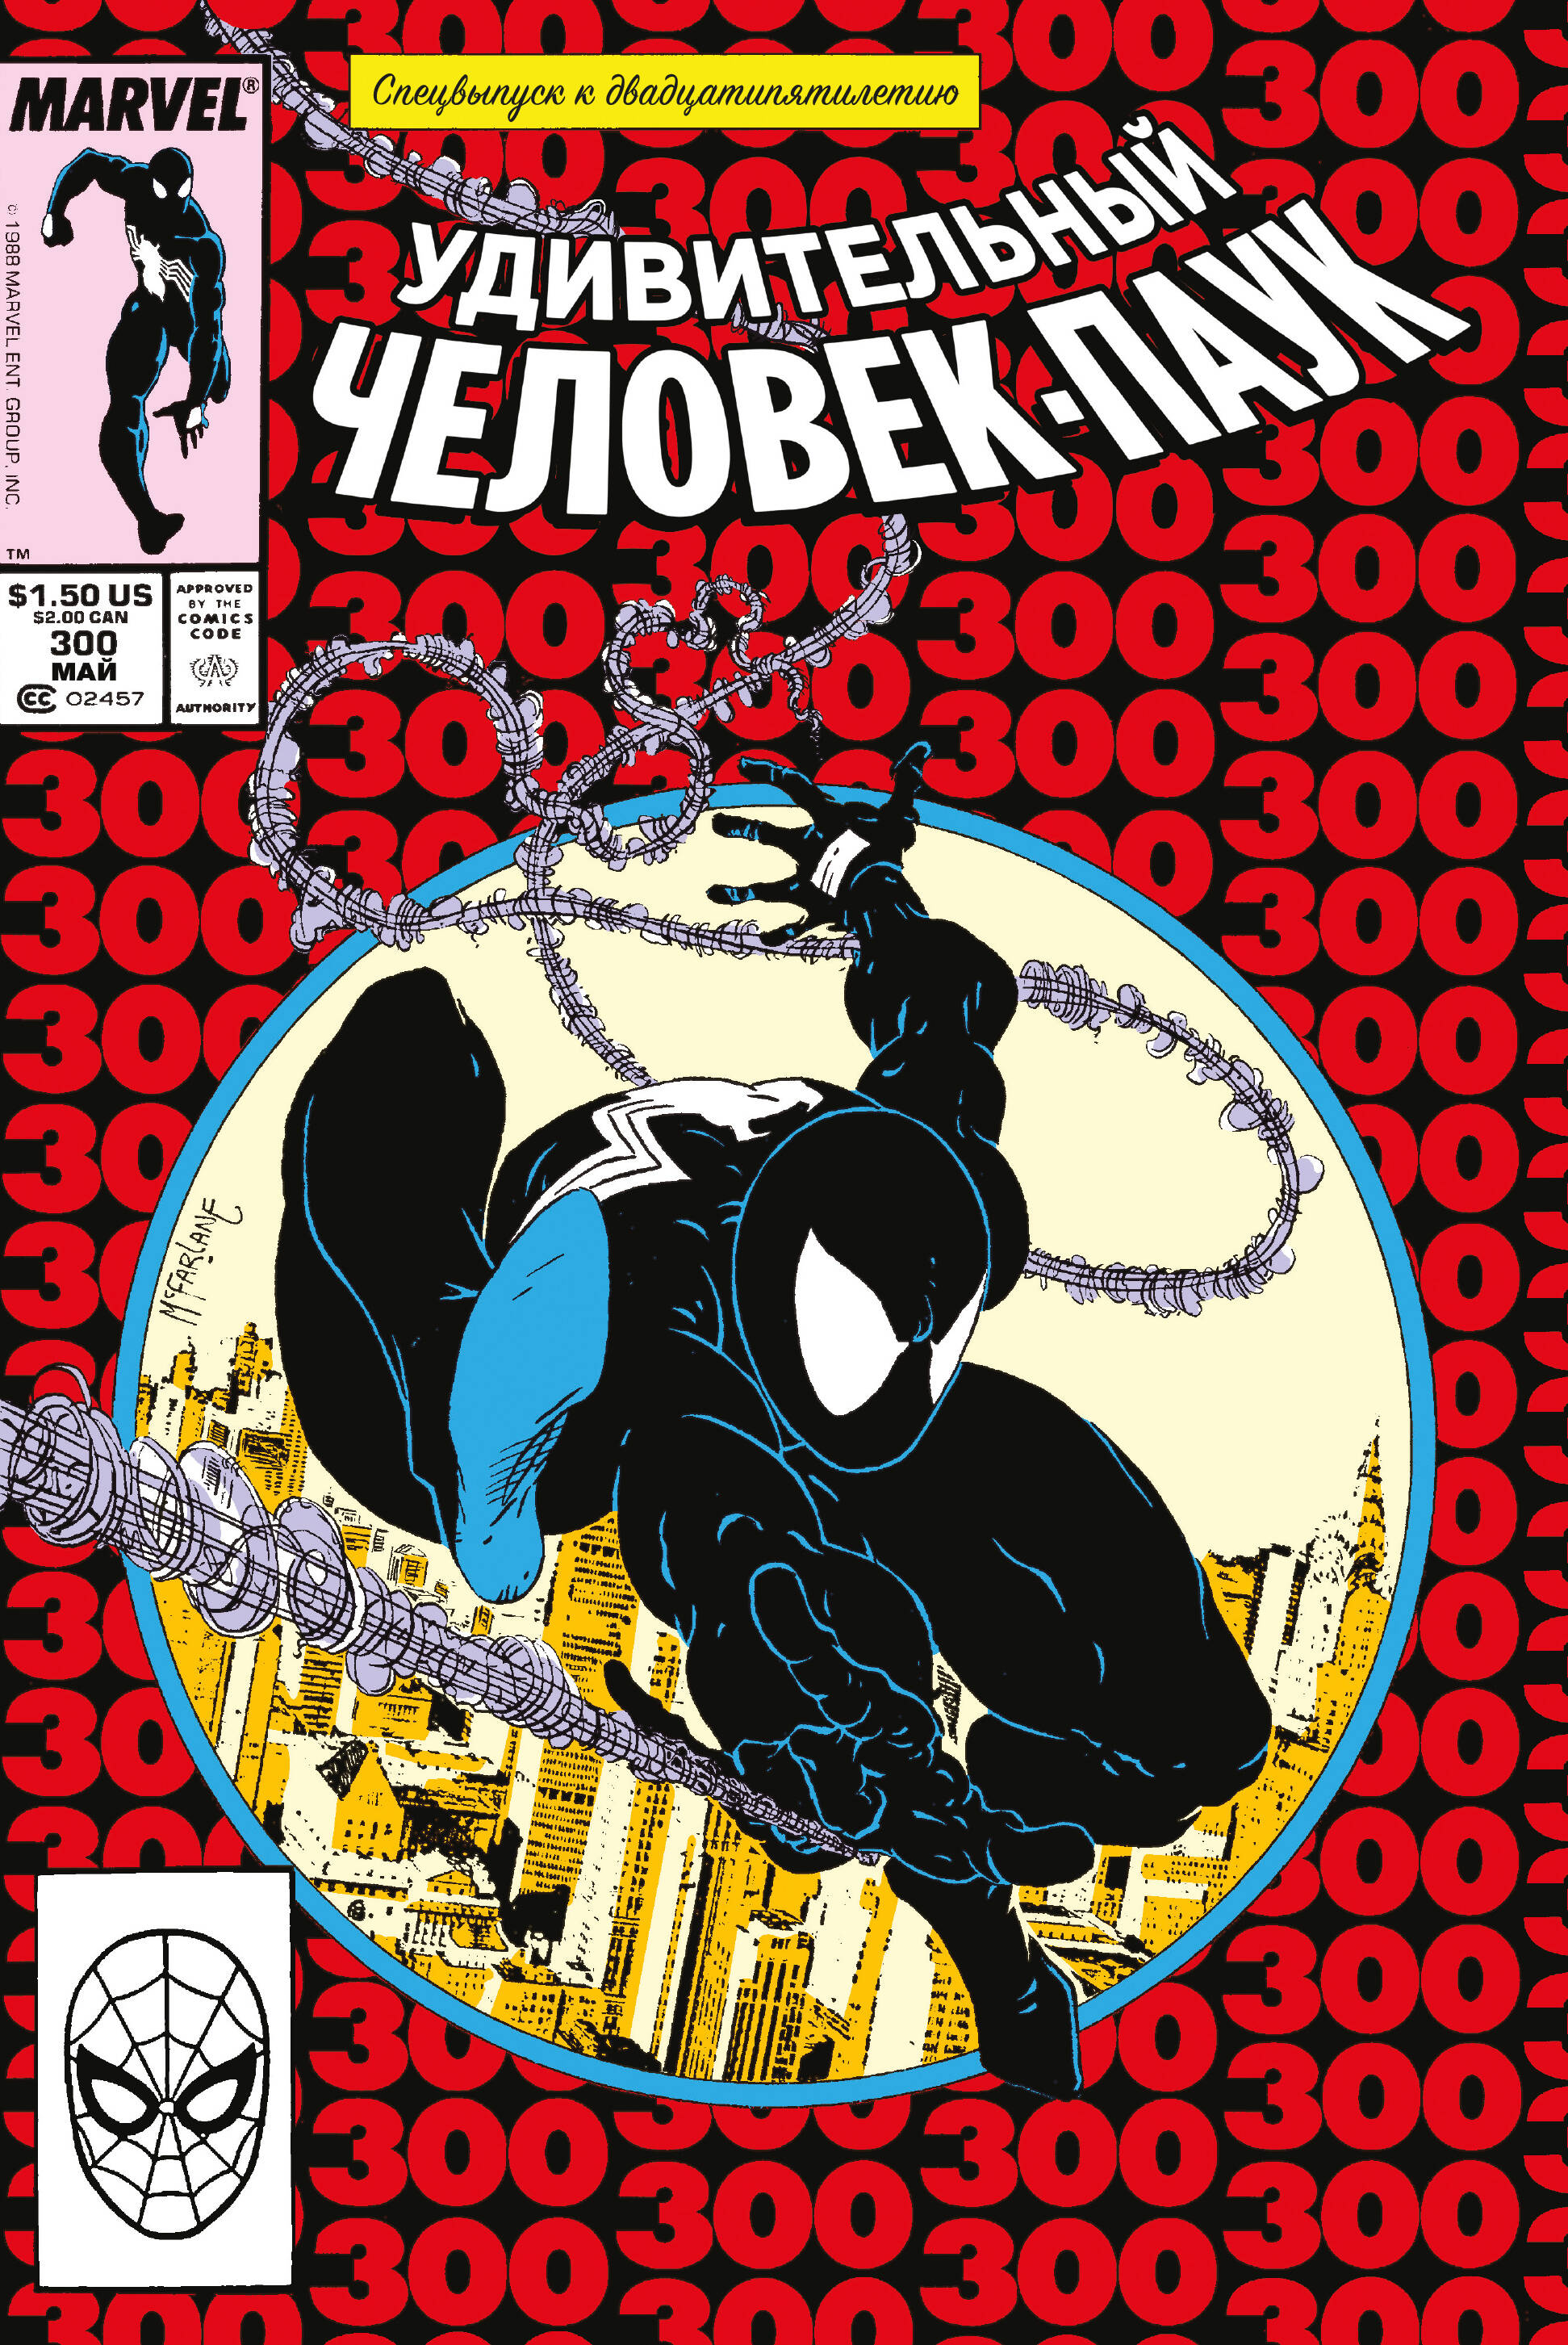 комикс удивительный человек паук первое появление карнажа Микелайни Дэвид Удивительный Человек-Паук #300. Первое появление Венома